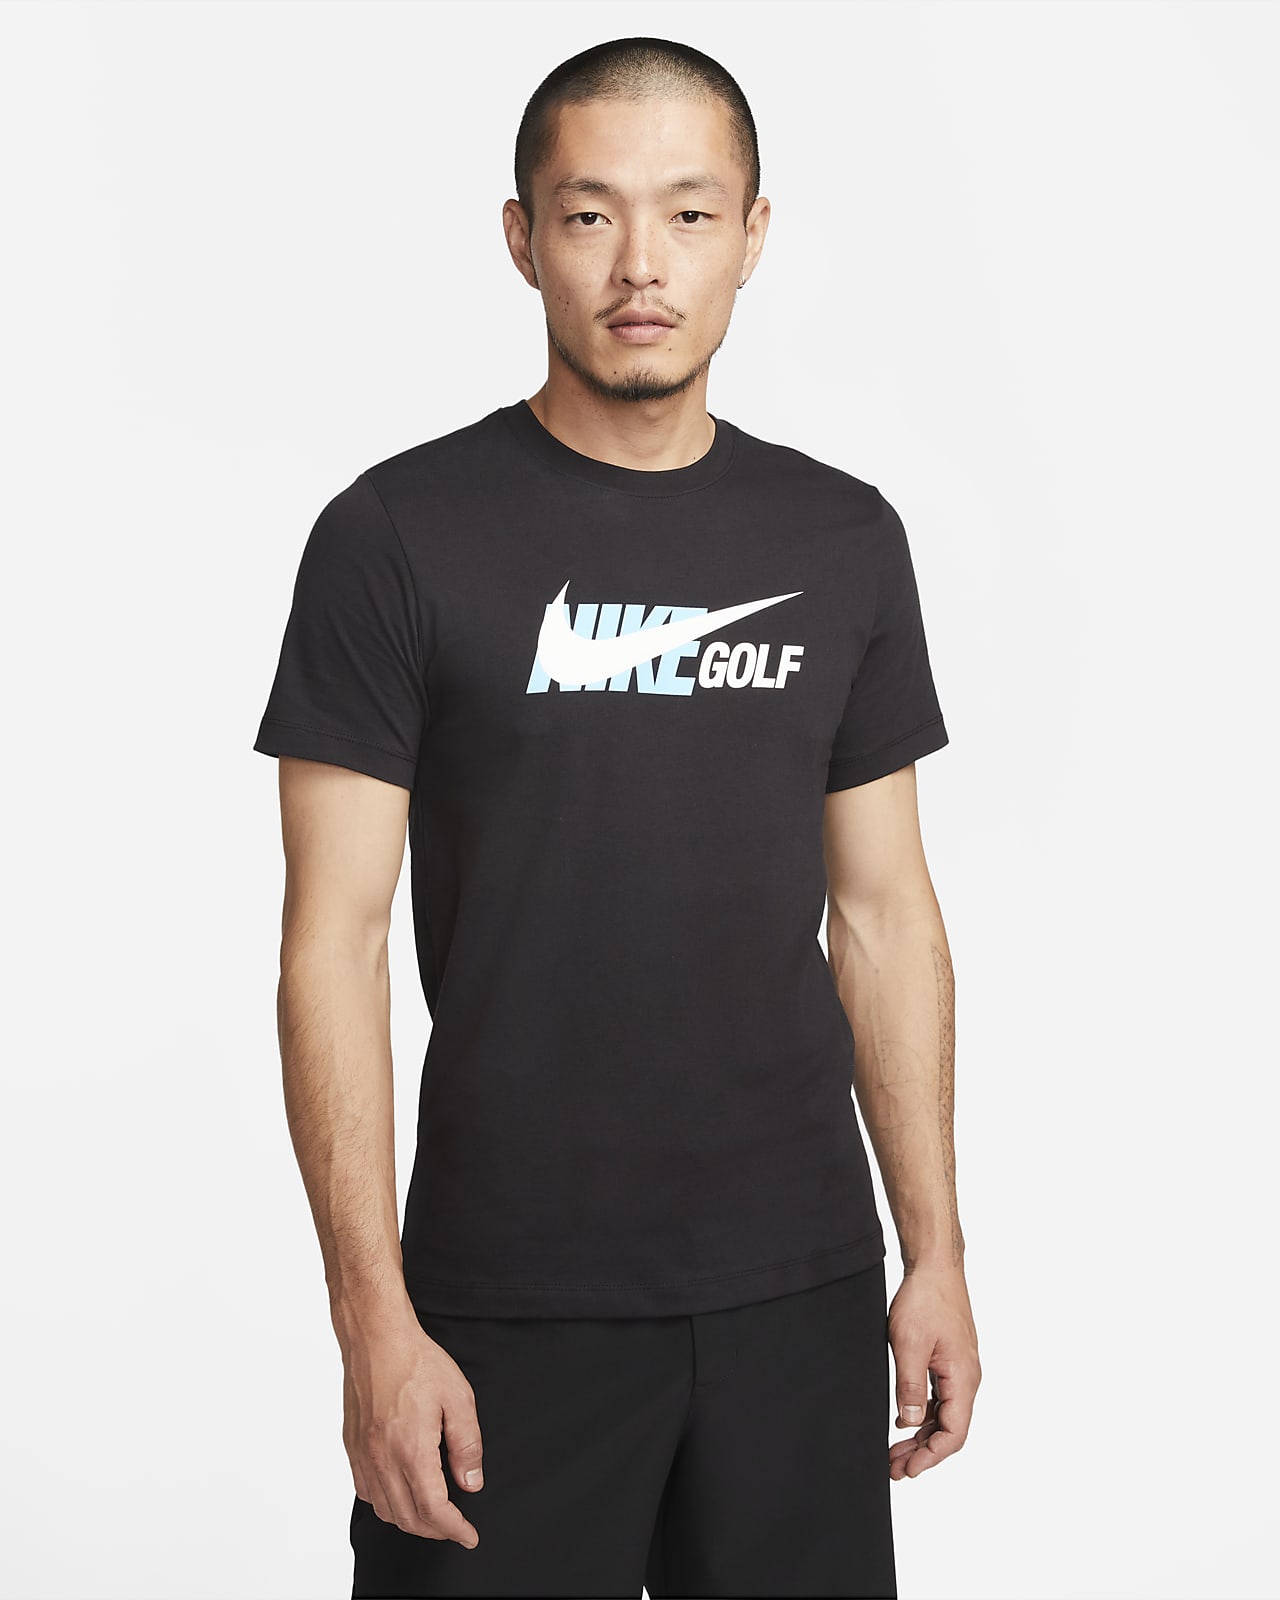 No puedo leer ni escribir síndrome solamente Nike Men's Golf T-Shirt. Nike VN